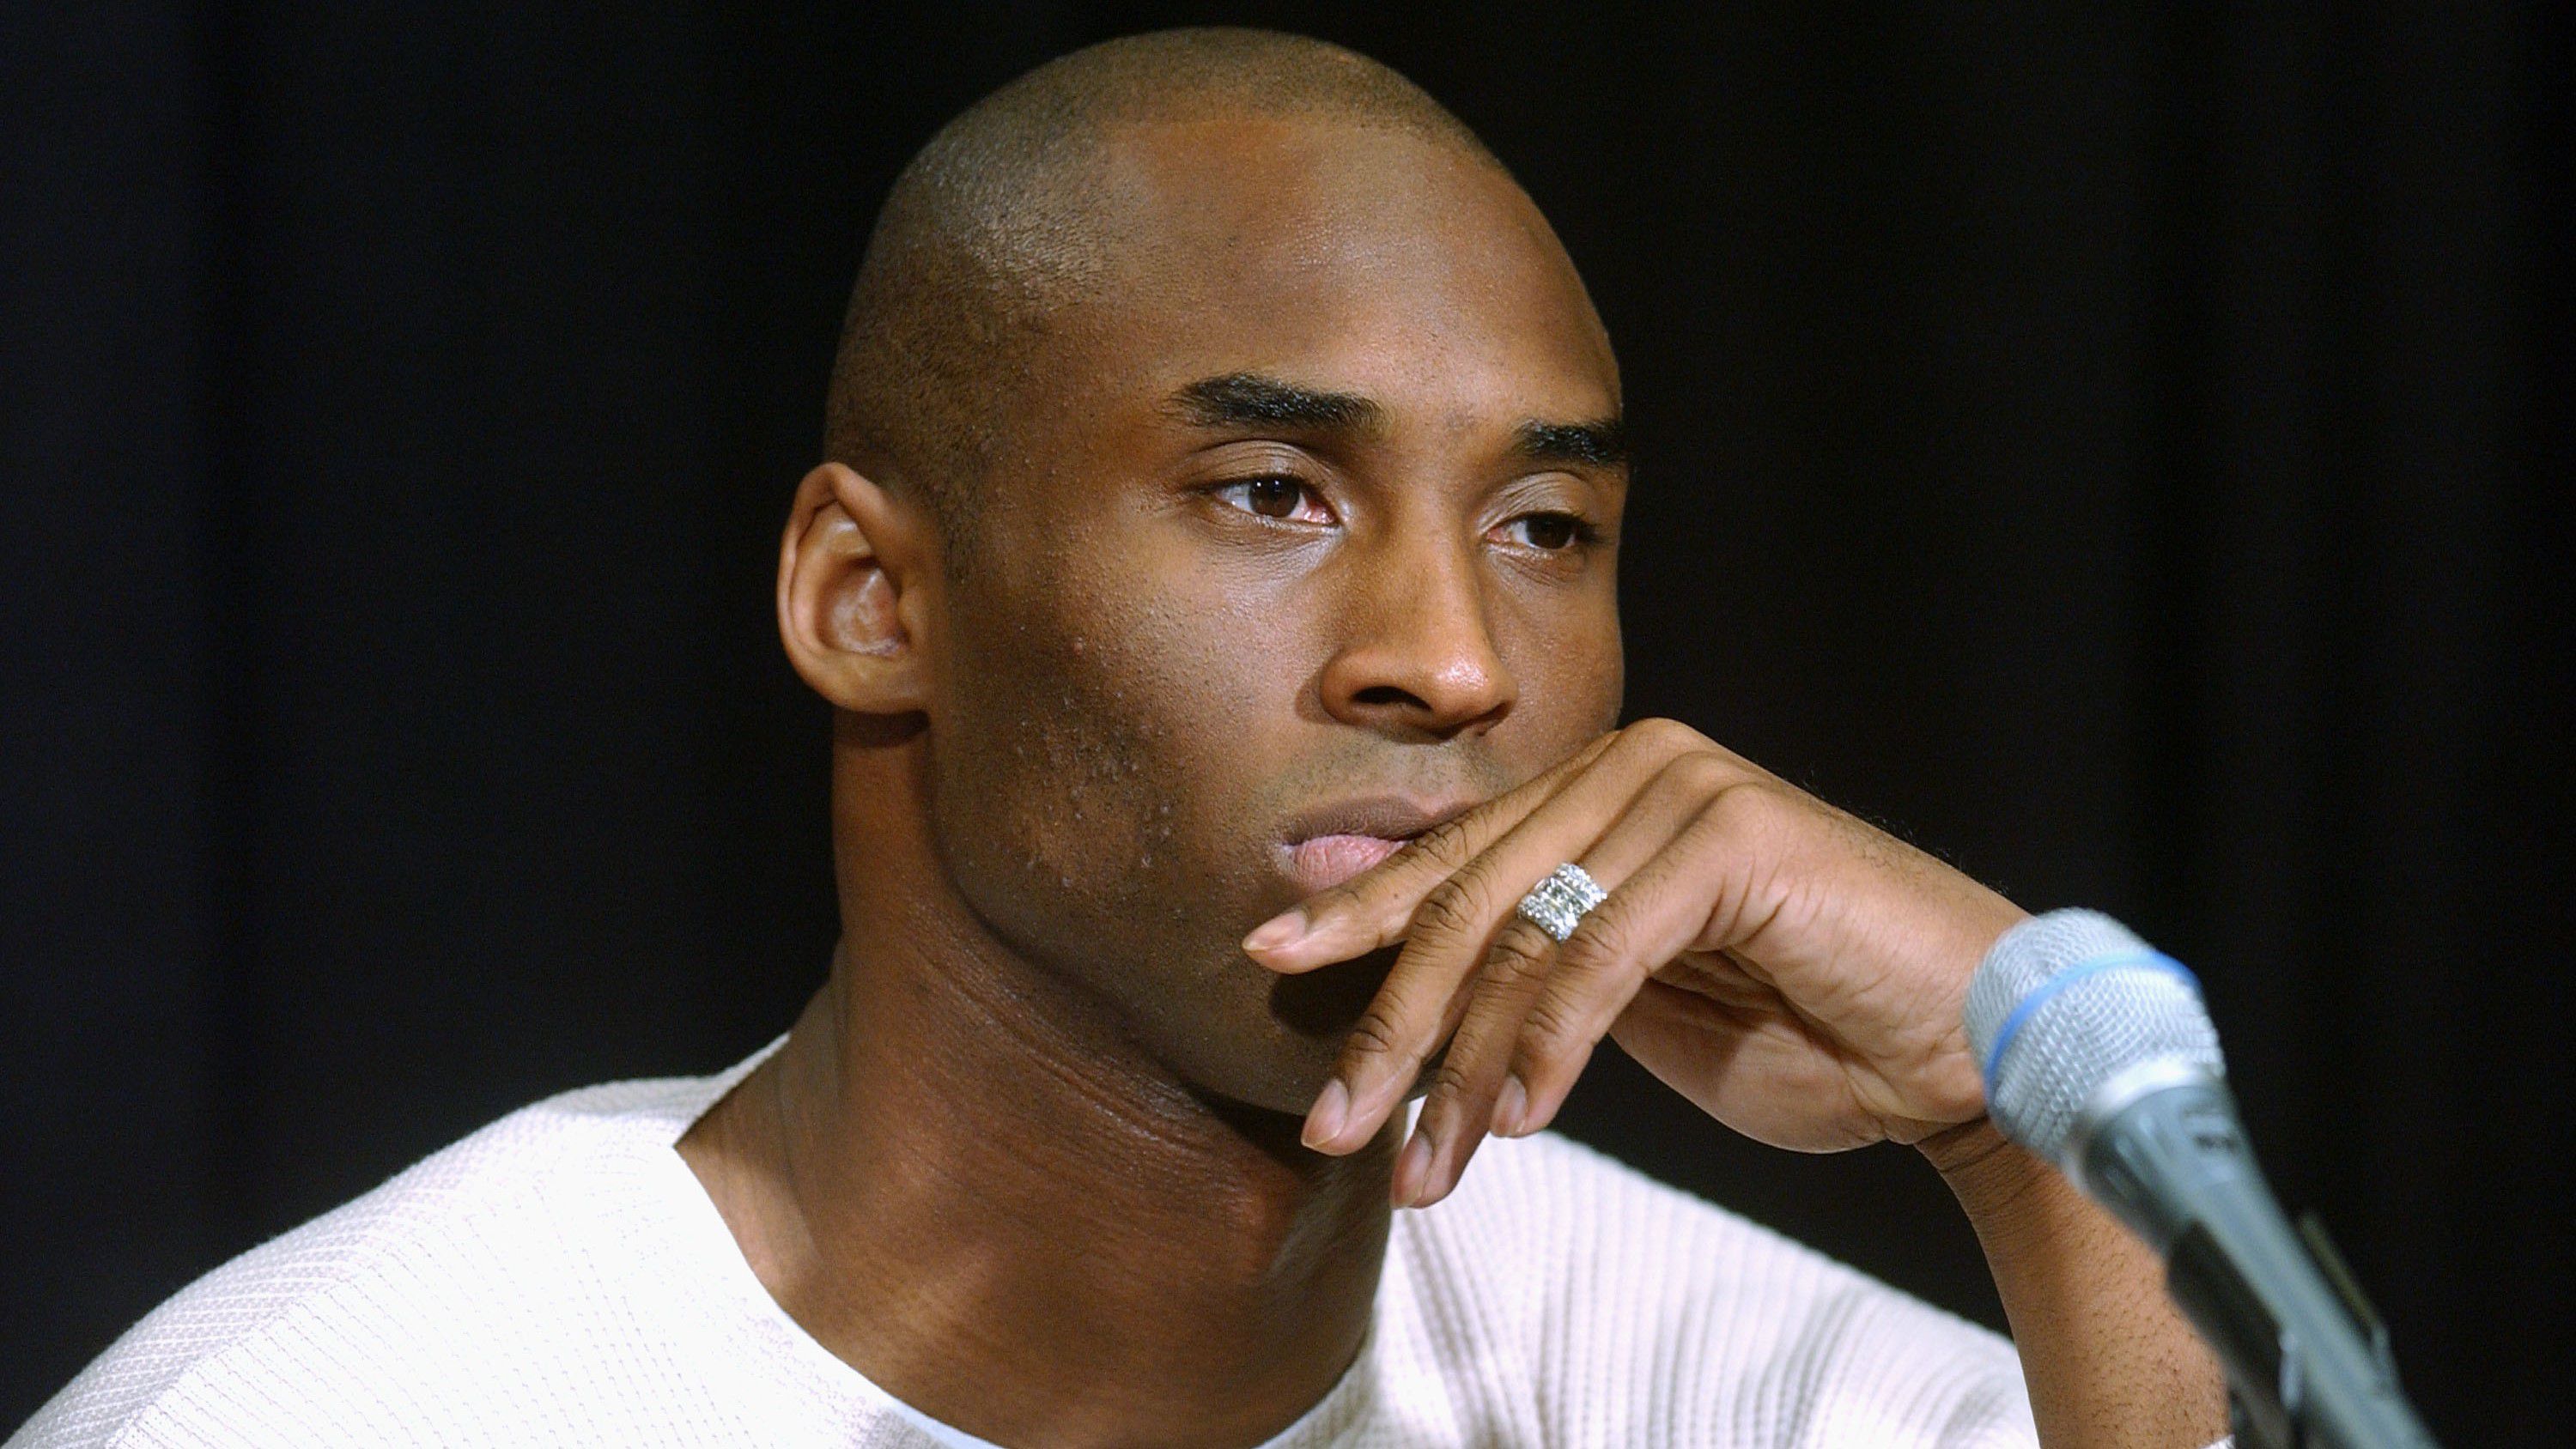 Igazságtalanul bemocskolták Kobe Bryant szüleit a bajnoki gyűrű miatt